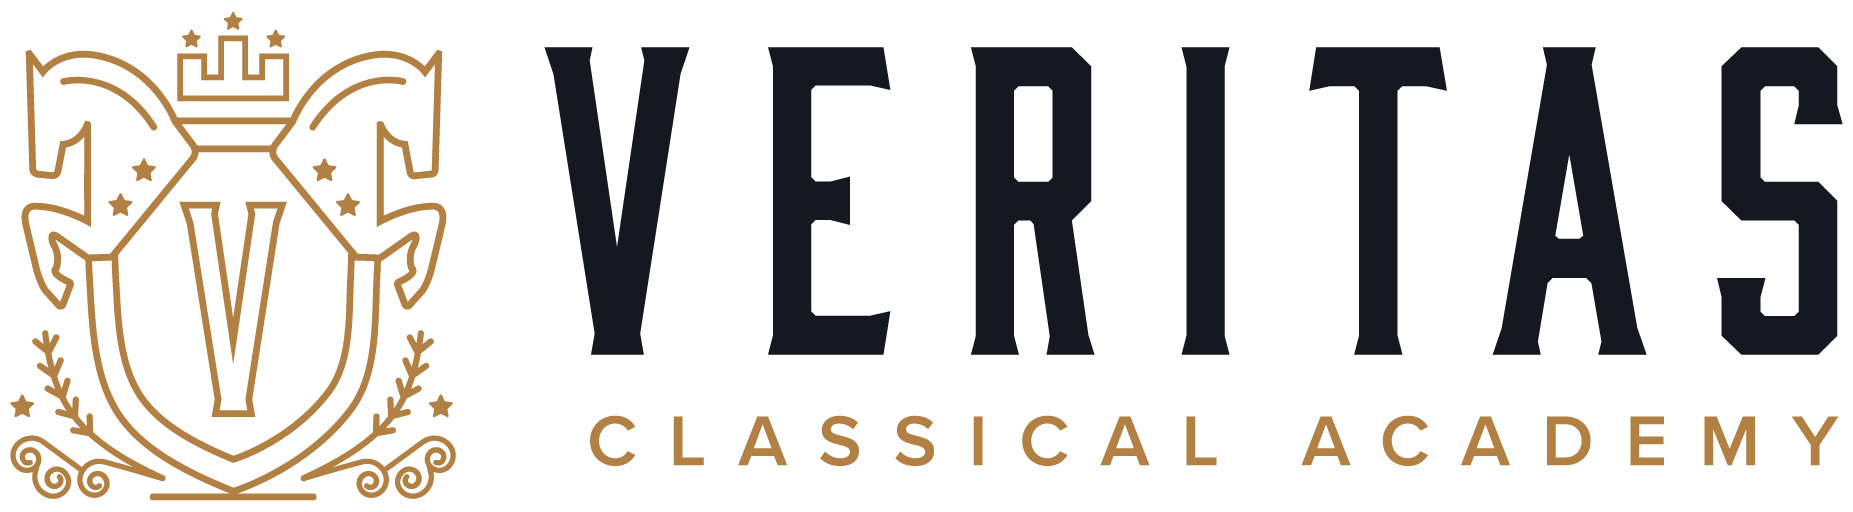 Veritas Classical Academy of Eau Claire